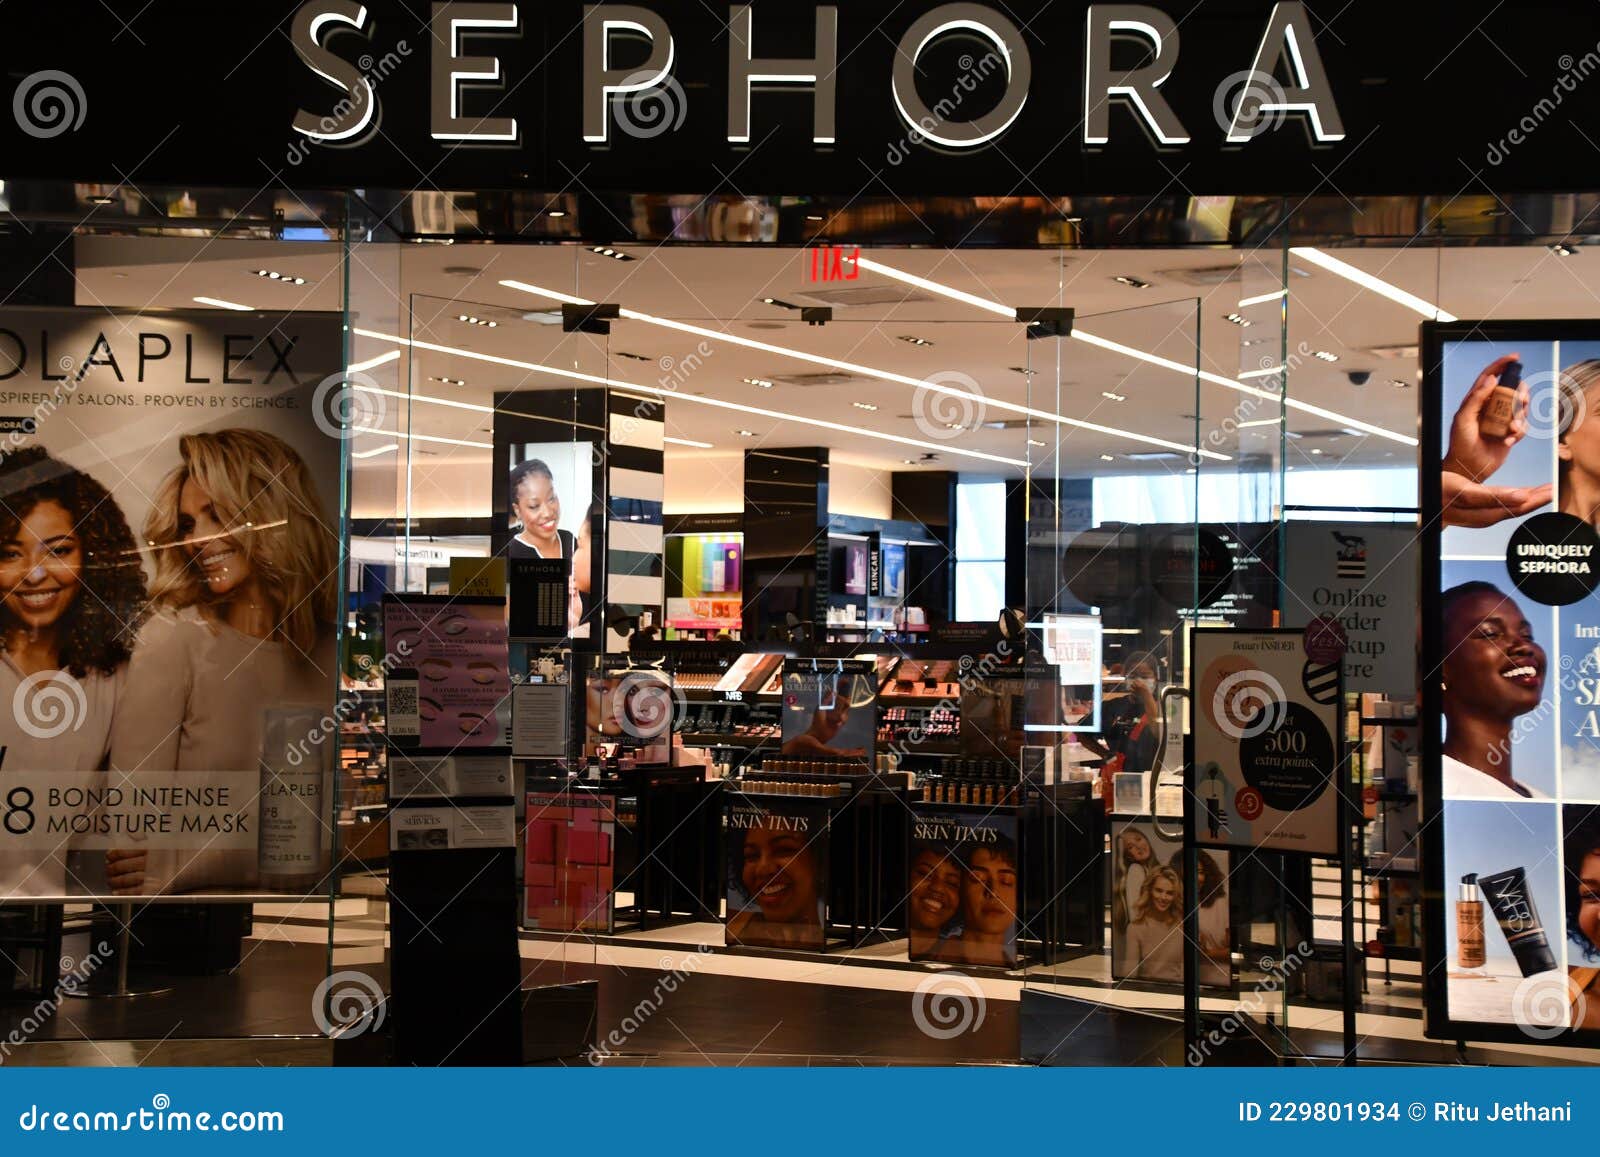 New Sephora stores